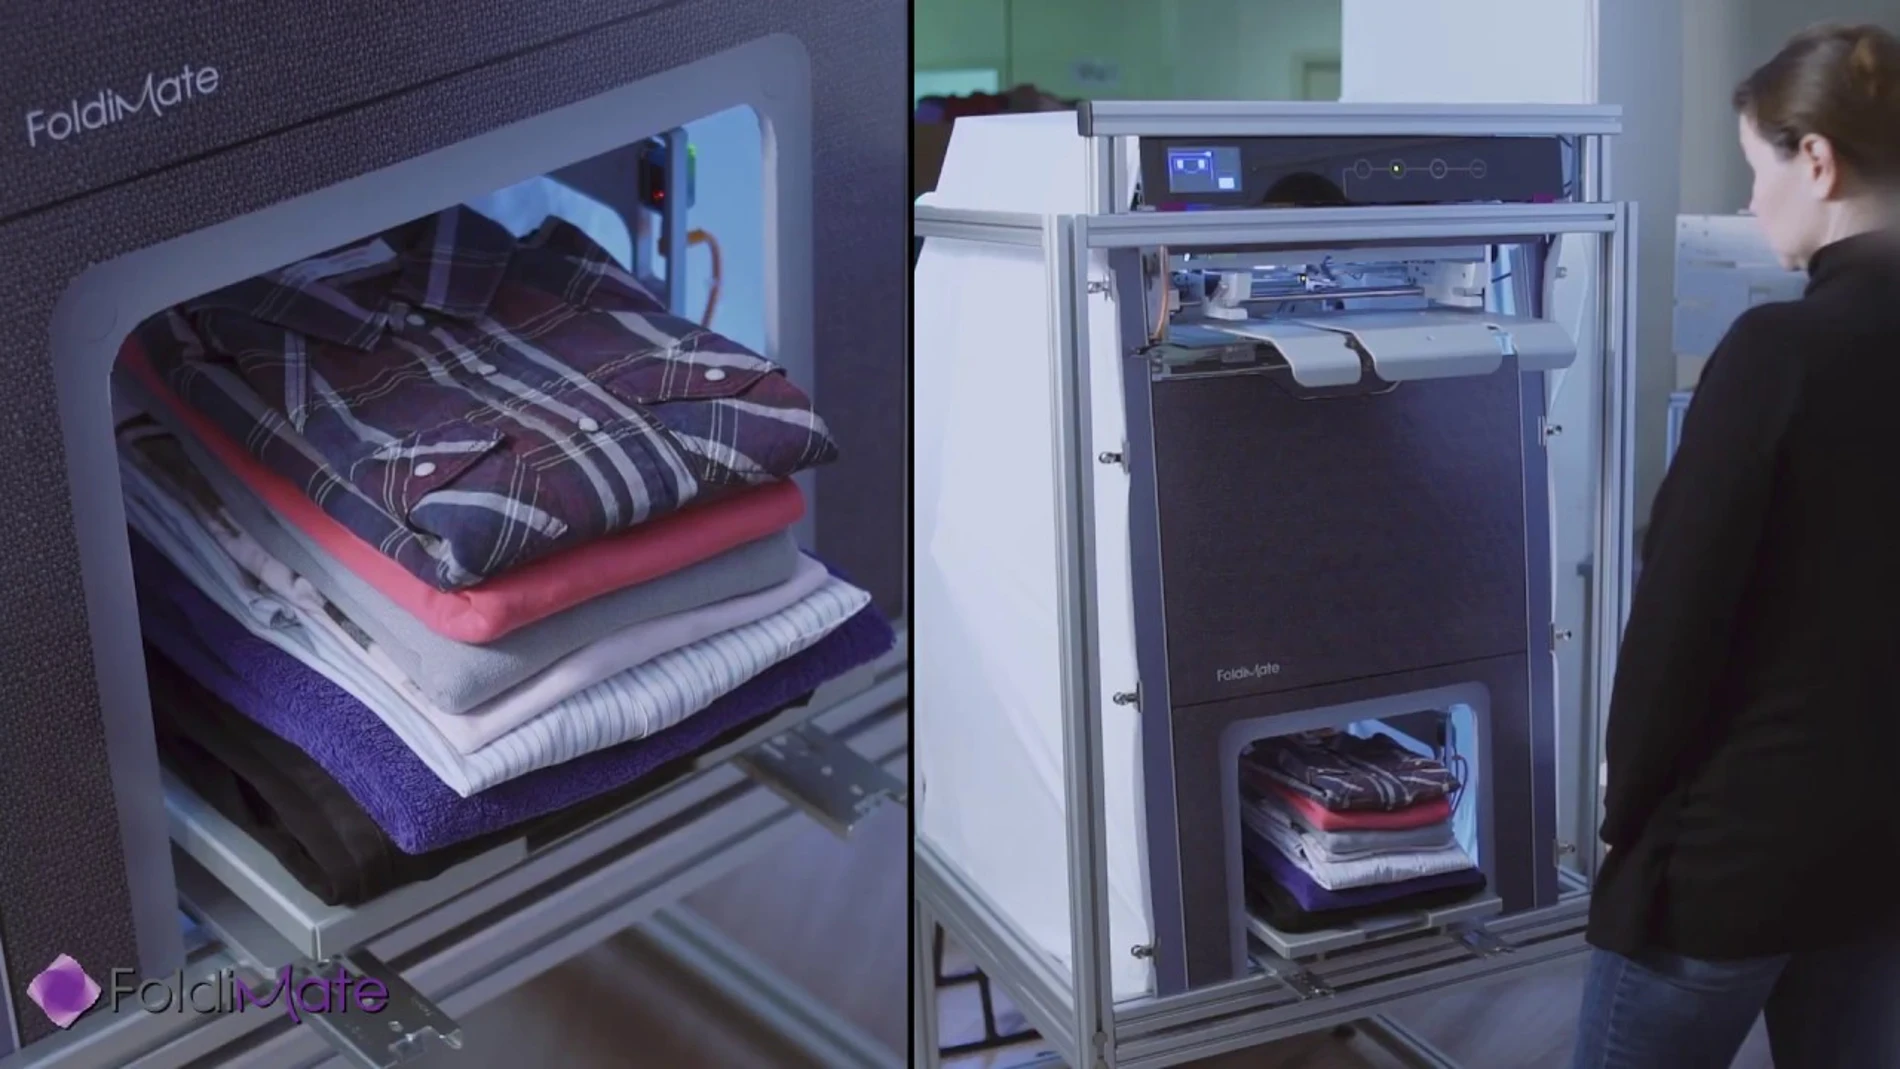 el invento del siglo: la máquina plancha, dobla y la ropa en segundos